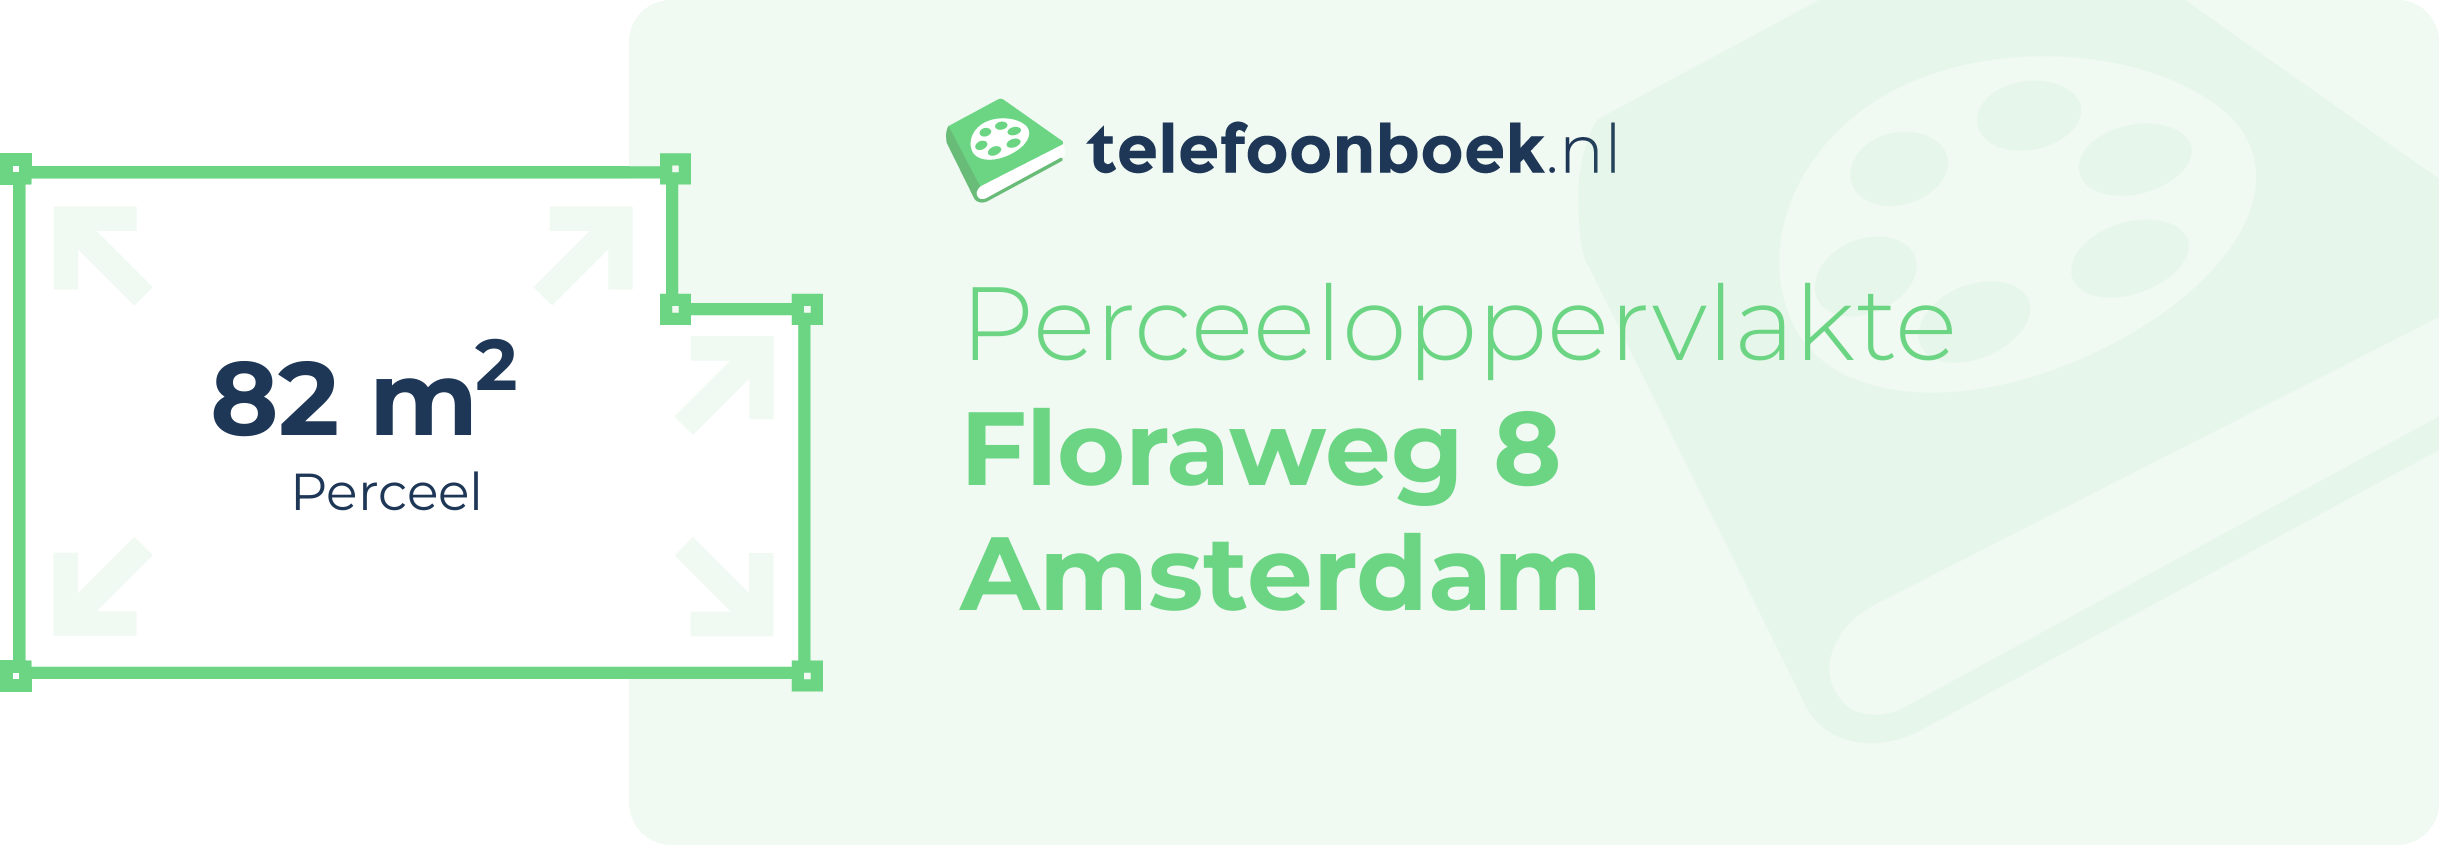 Perceeloppervlakte Floraweg 8 Amsterdam